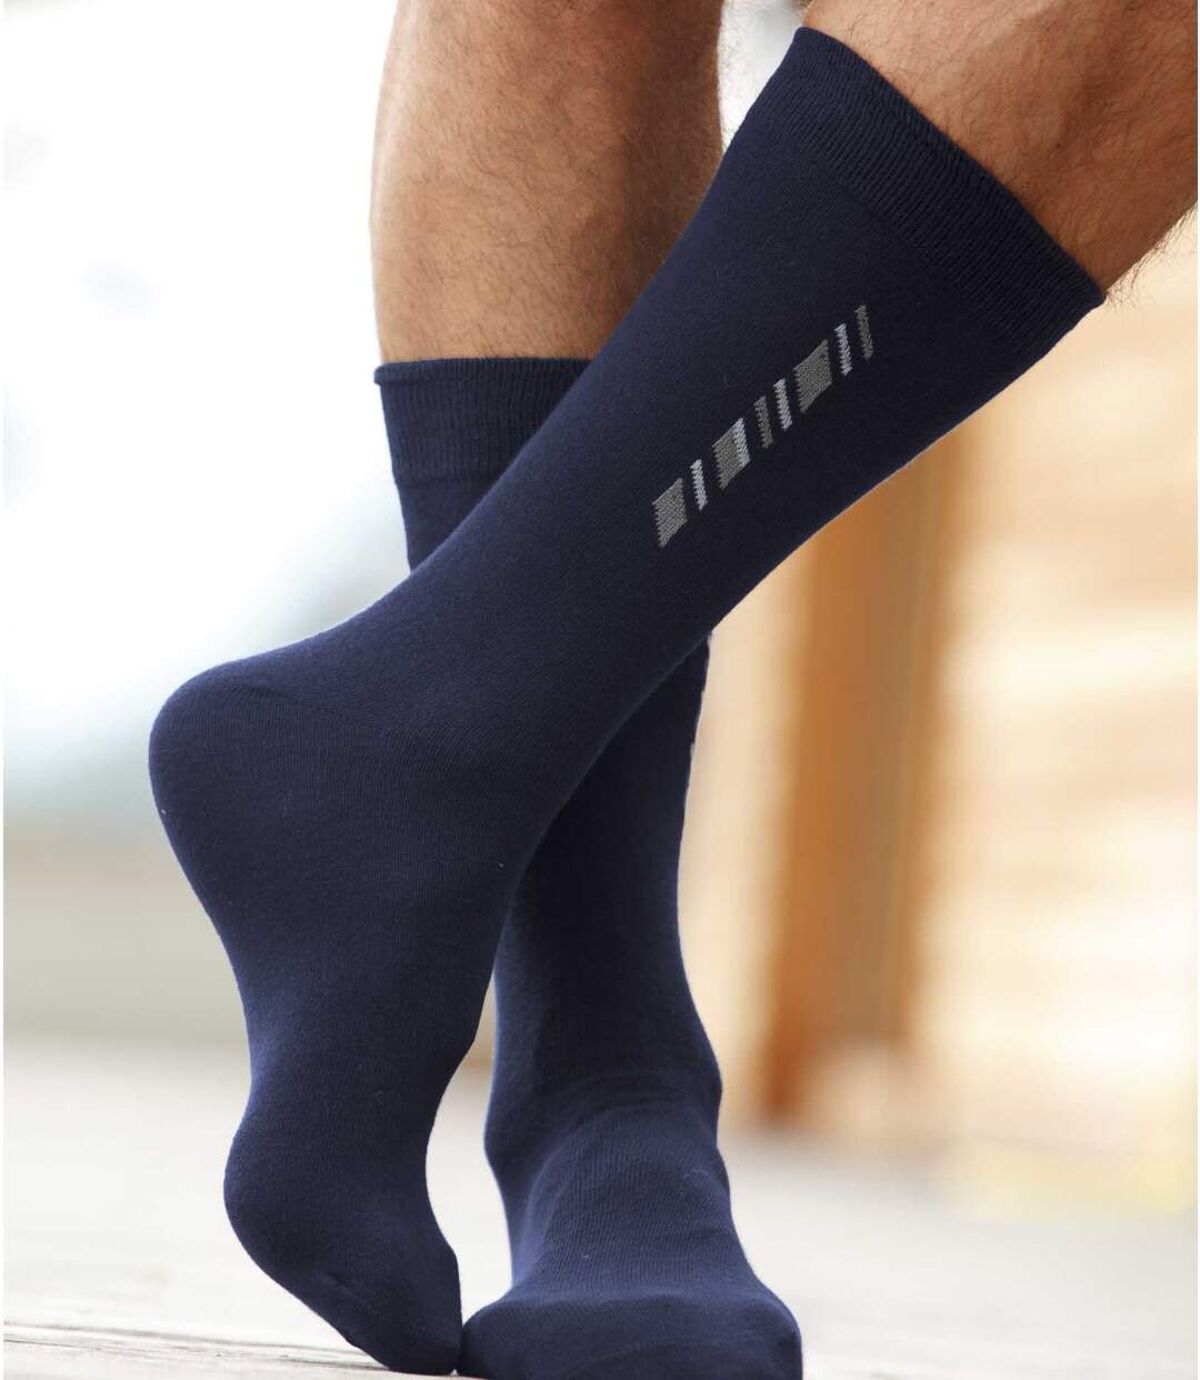 Pack of 5 Pairs of Men's Patterned Socks - Black Navy Grey Atlas For Men